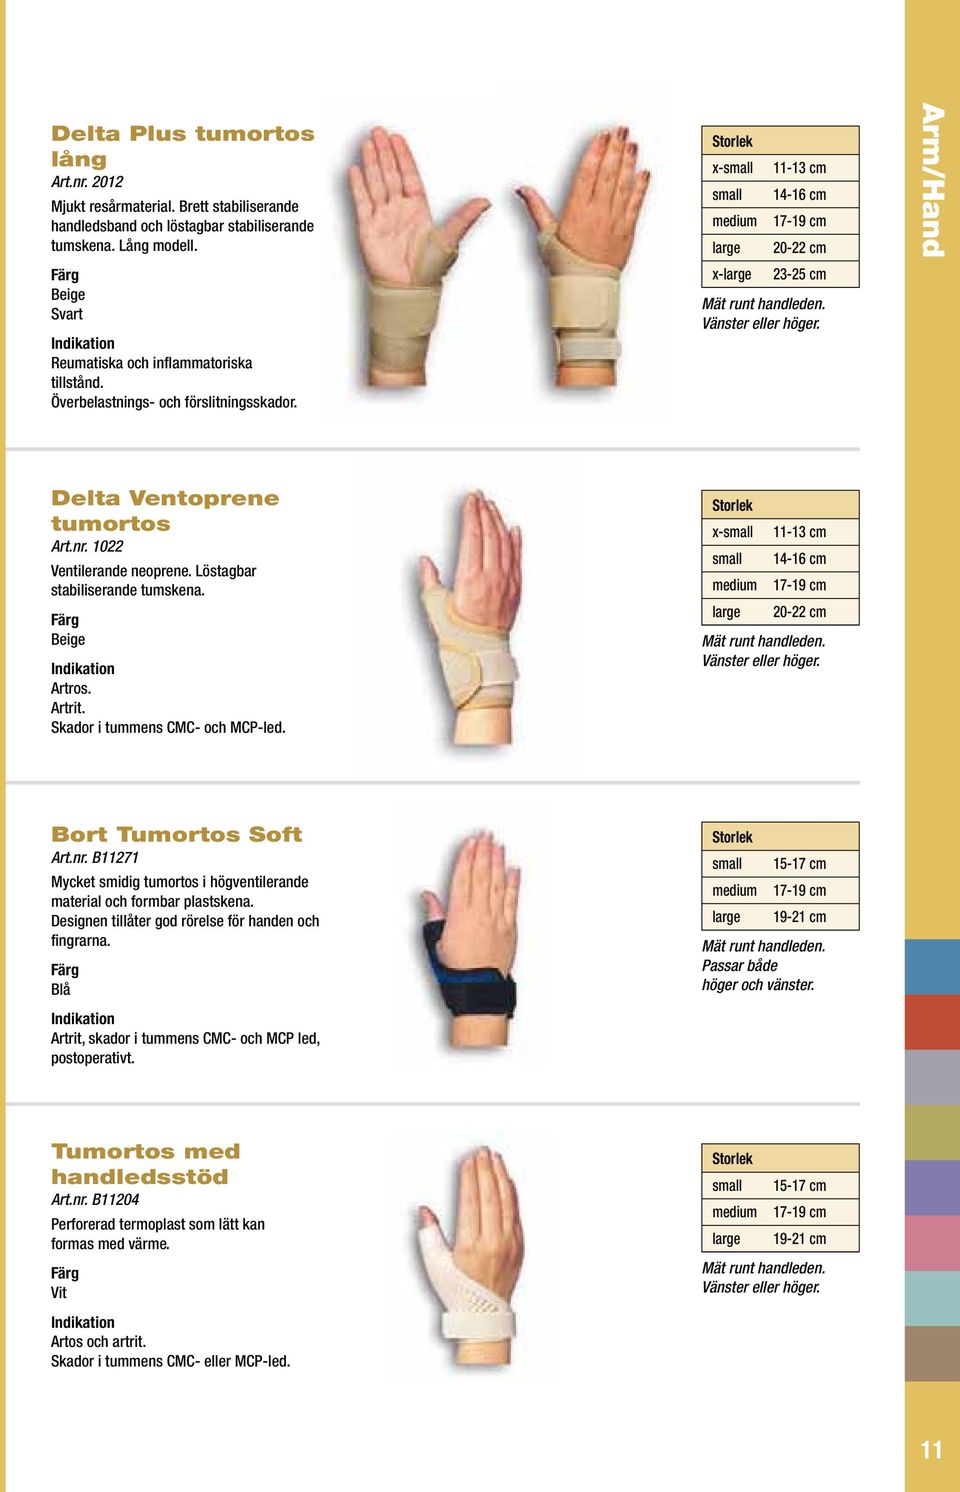 Arm/Hand Delta Ventoprene tumortos Art.nr. 1022 Ventilerande neoprene. Löstagbar stabiliserande tumskena. Beige Artros. Artrit. Skador i tummens CMC- och MCP-led.